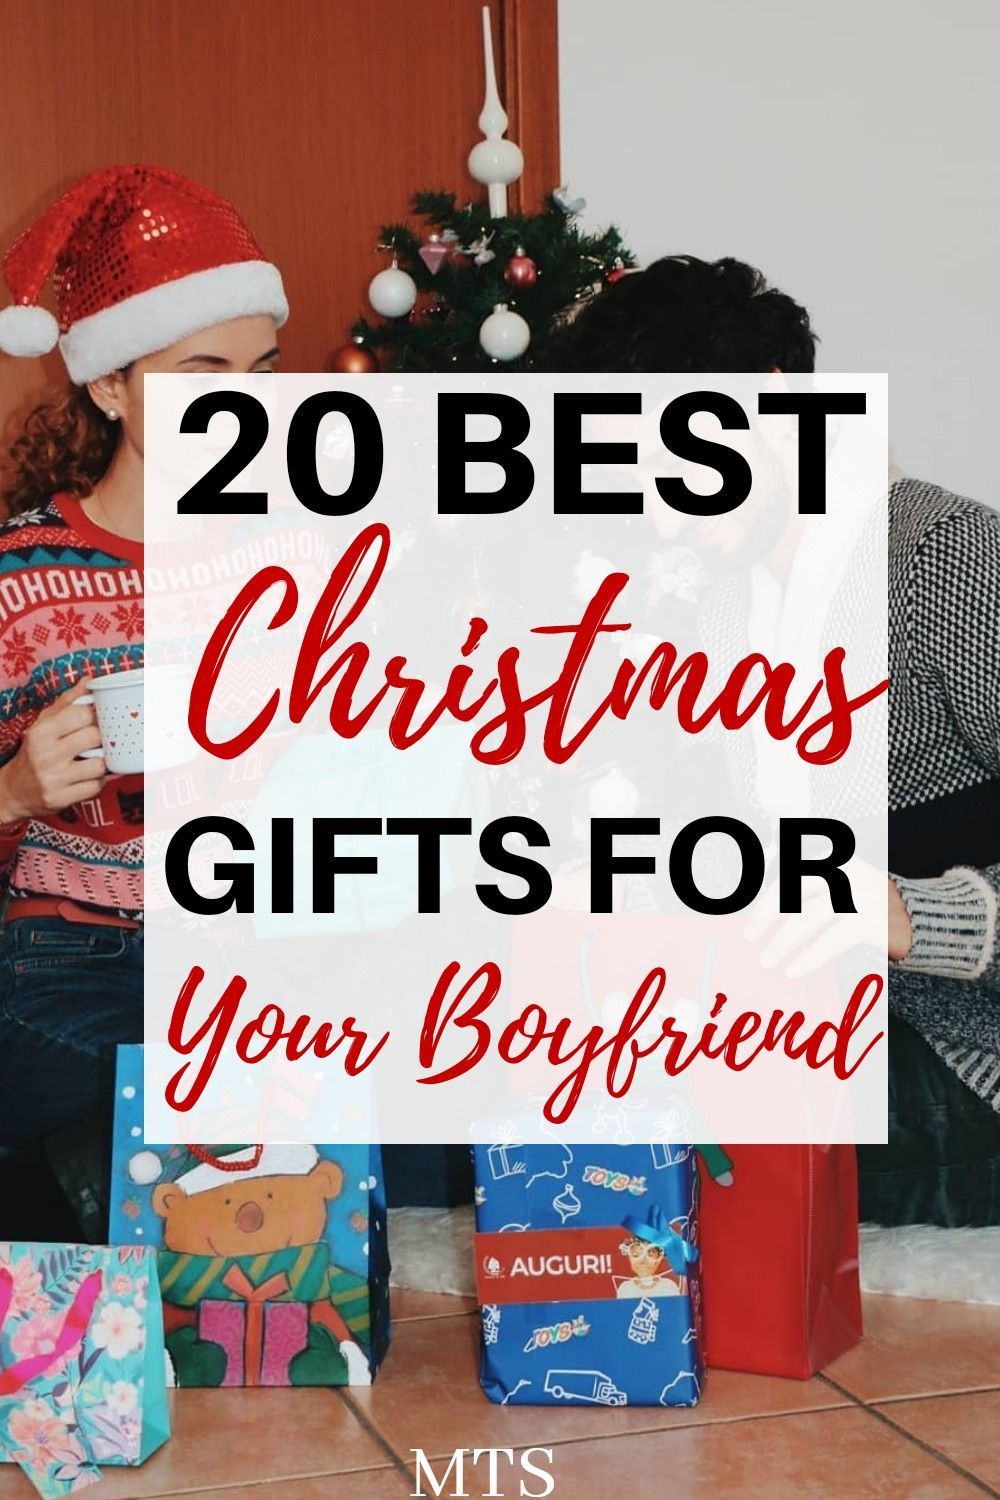 Christmas Present Ideas For Boyfriend - Christmas Present Ideas For Boyfriend -   xmas gifts for boyfriend diy